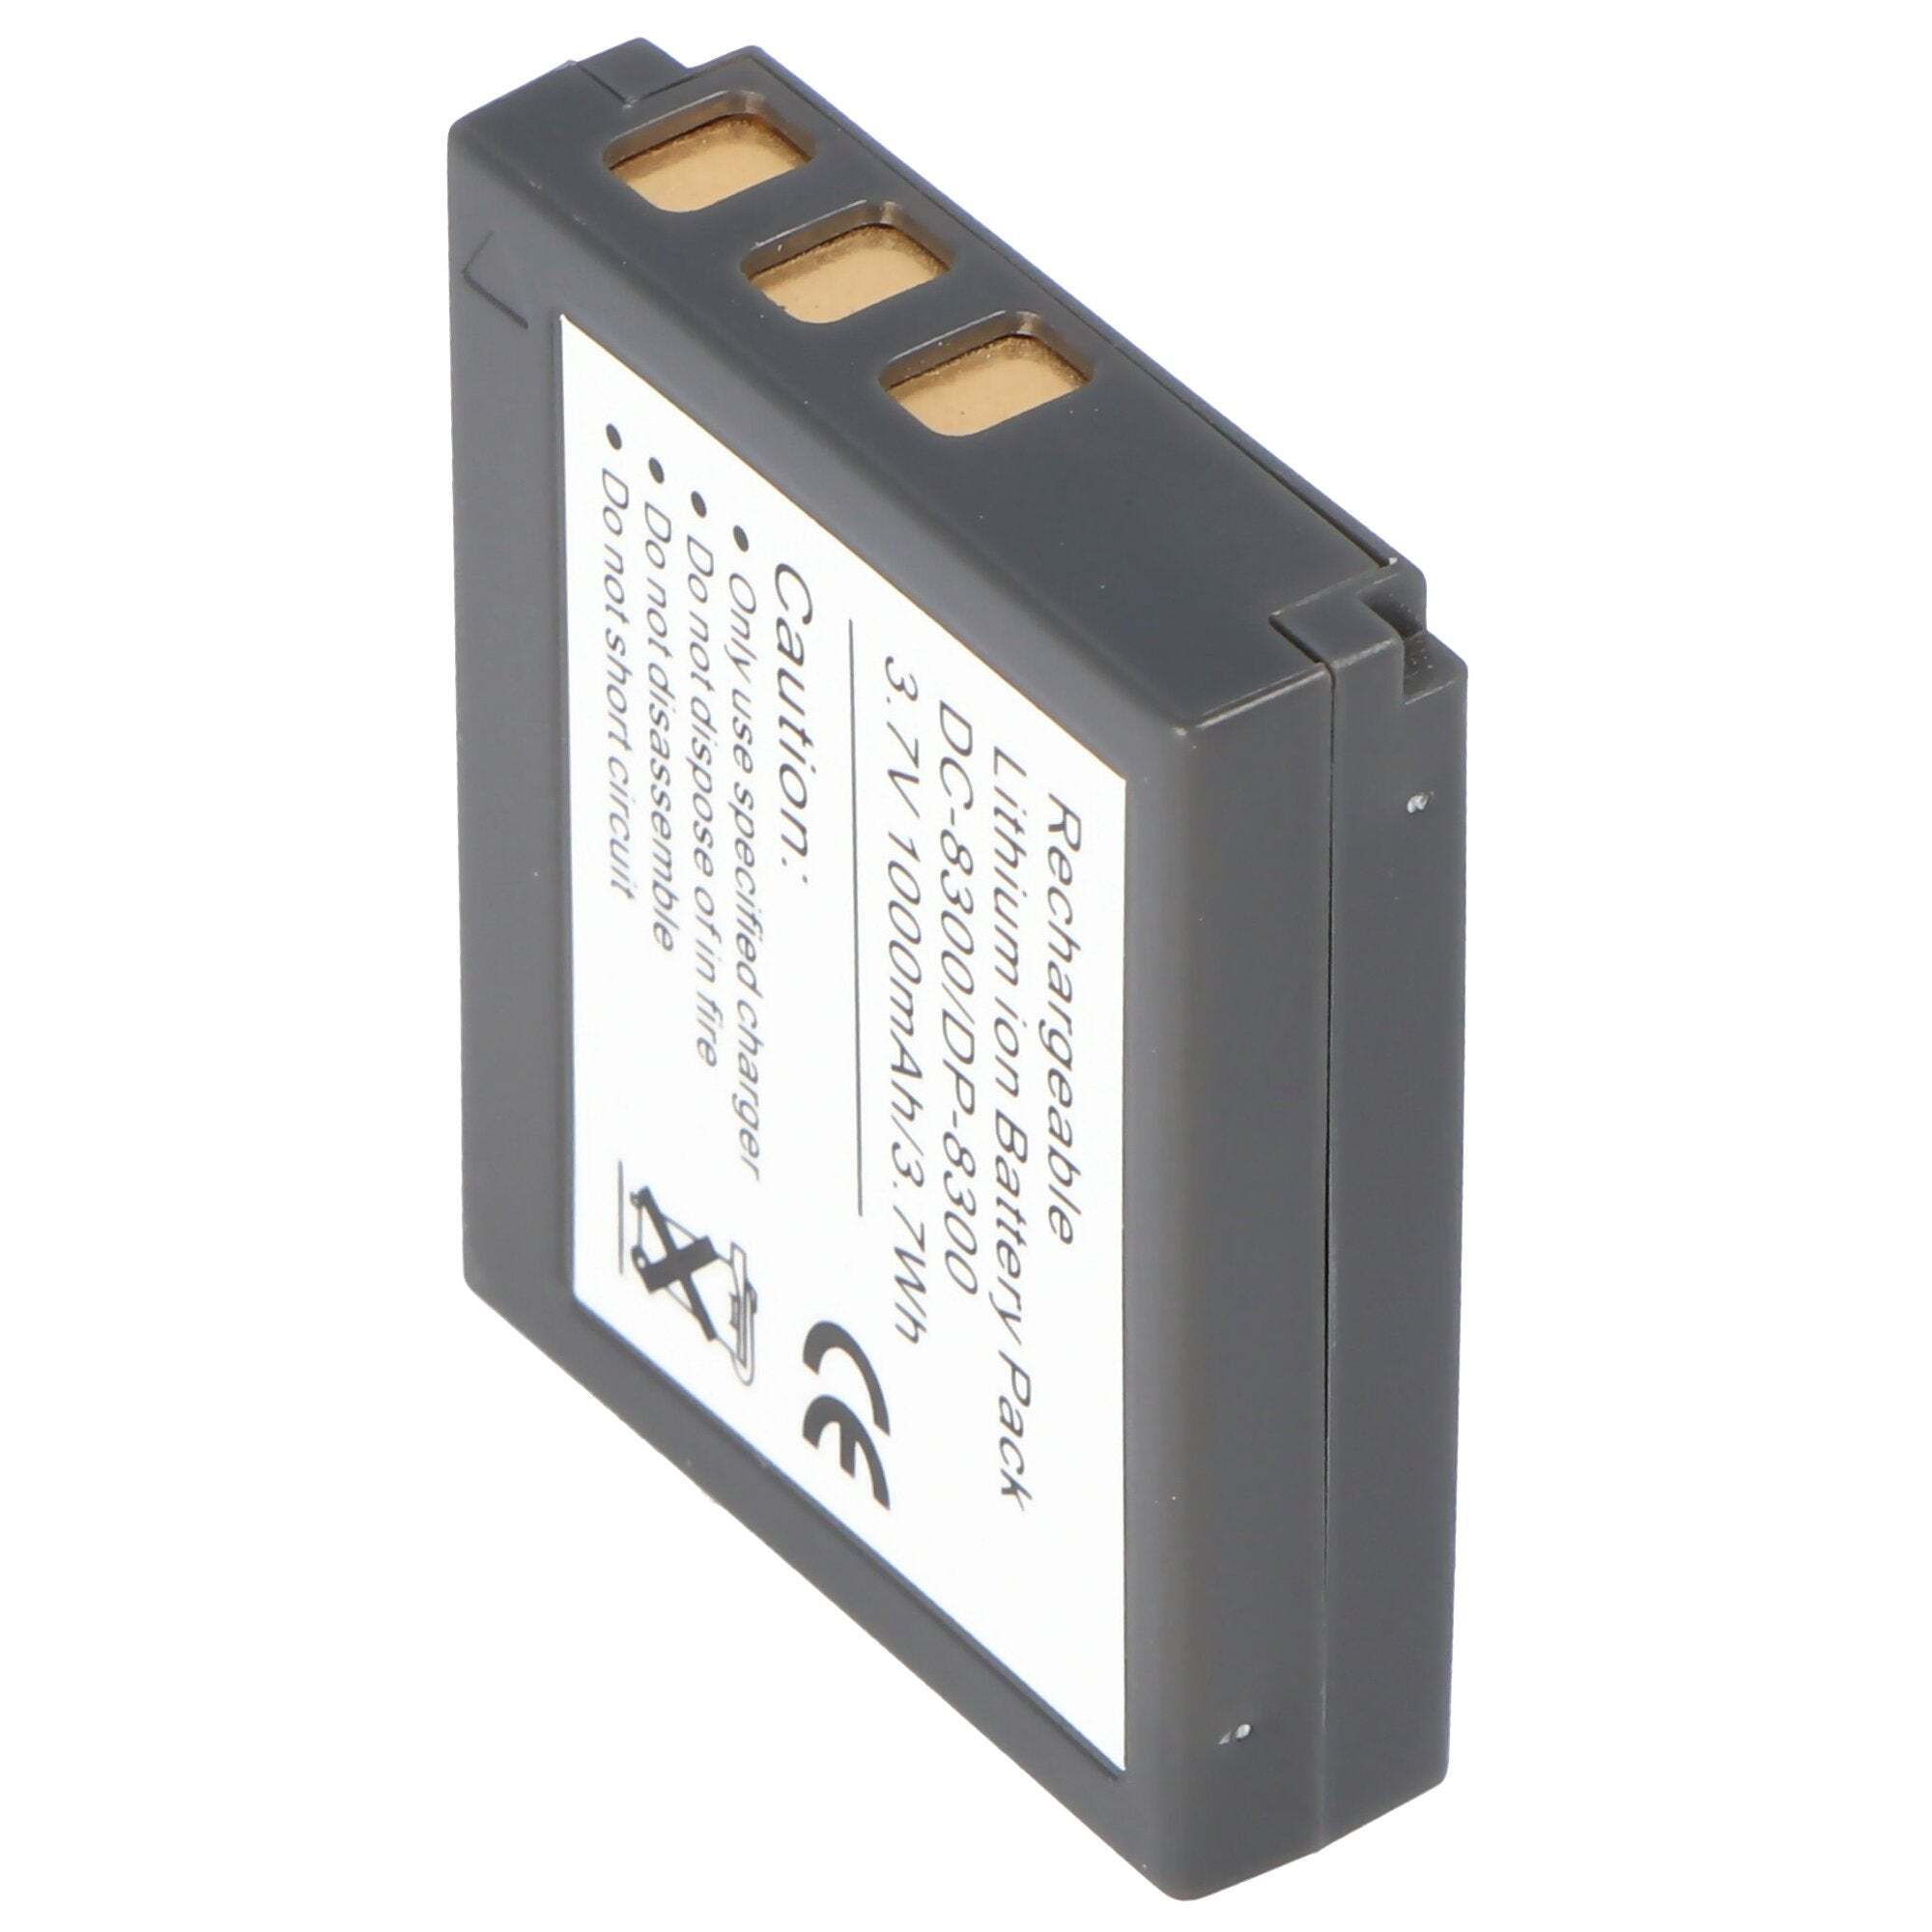 ACCUCELL AccuCell-batterij geschikt voor Traveler DC-8300, DC-8500, 02491-0028 batterij